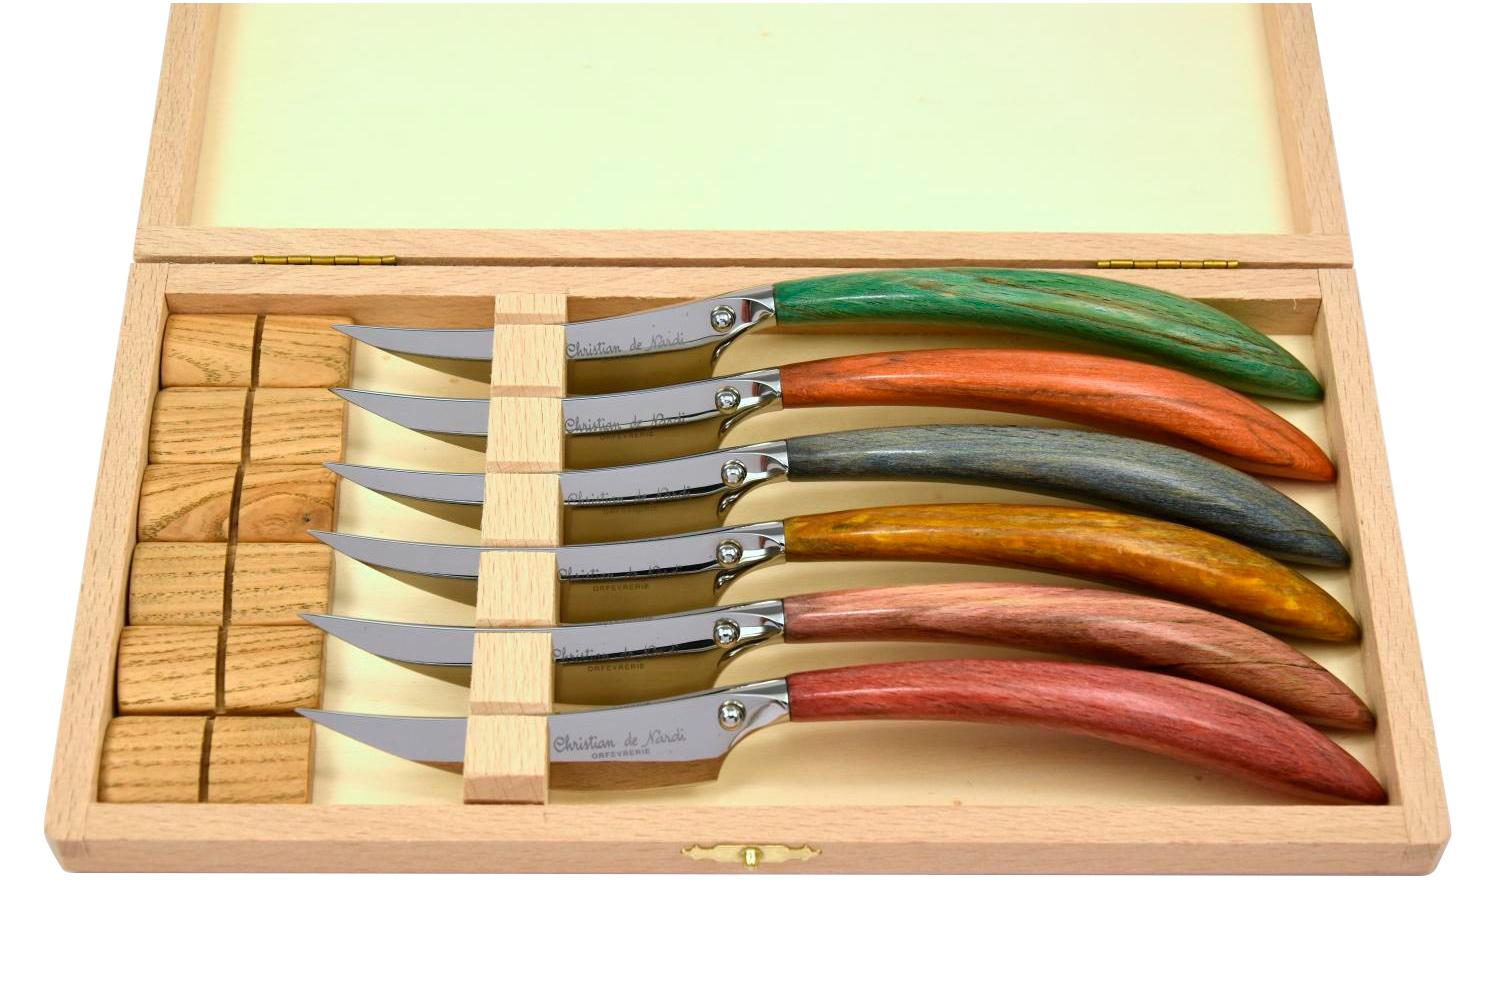 MODELE CALAO
couteau table par 6